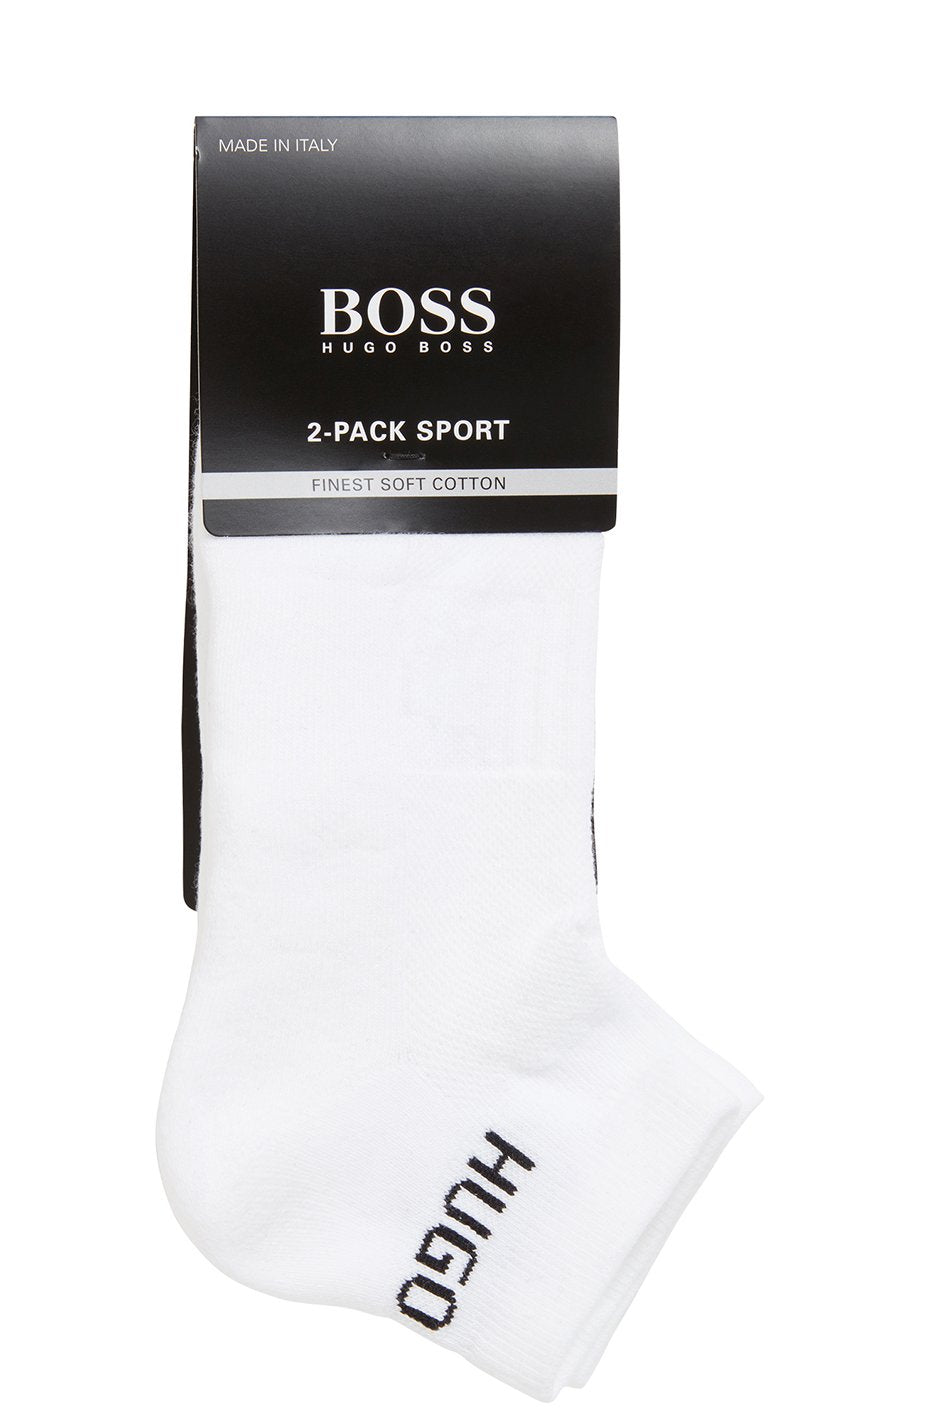 BOSS 2 Pack Men's Sport Socks